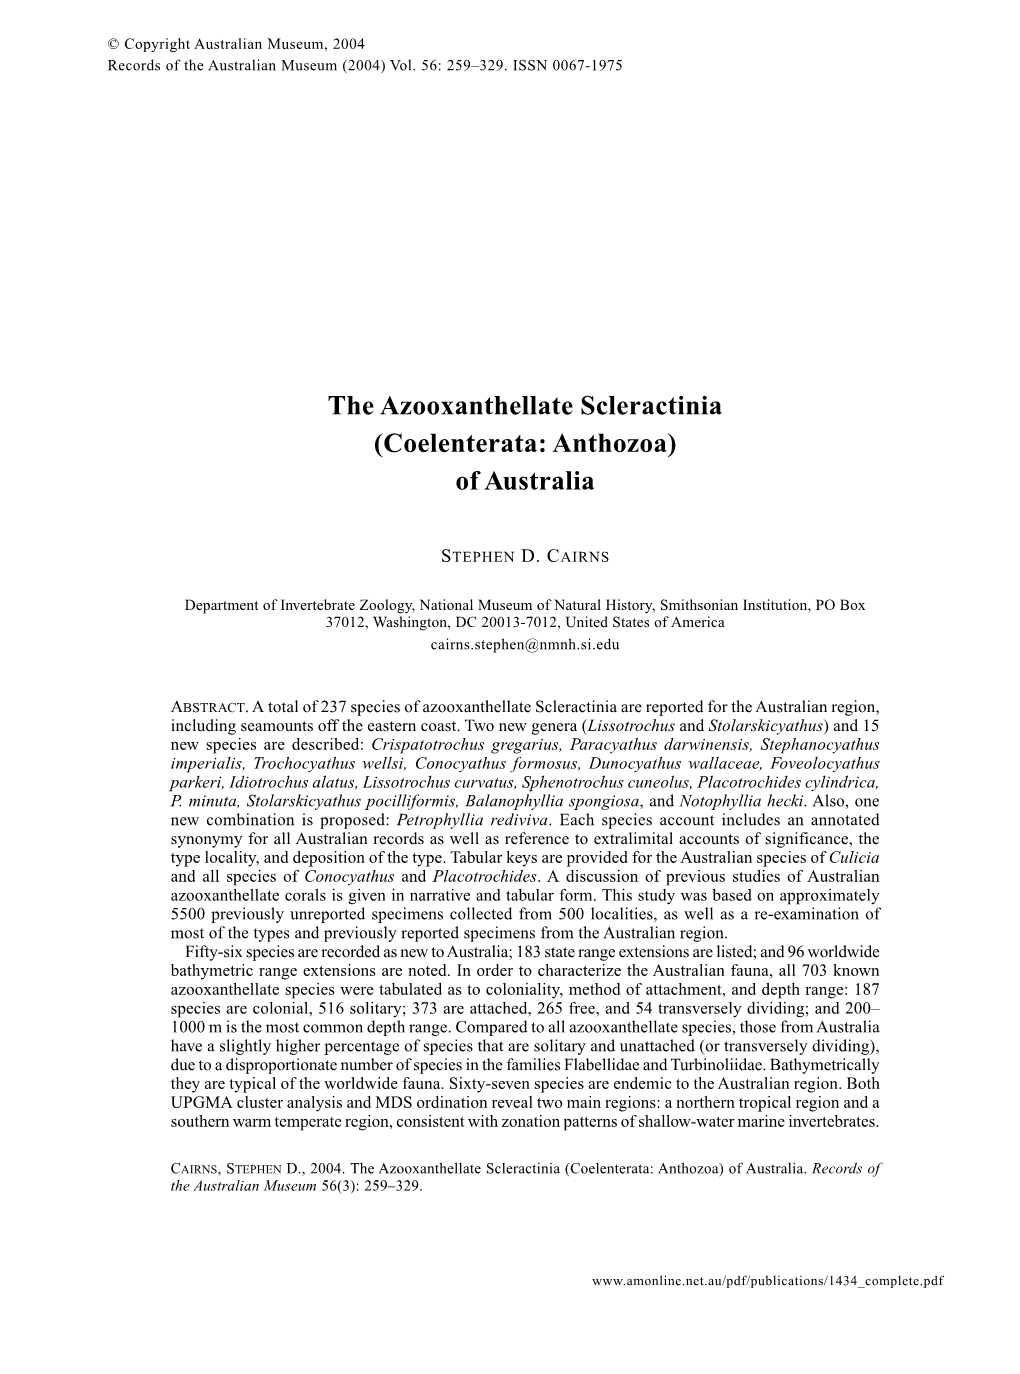 The Azooxanthellate Scleractinia (Coelenterata: Anthozoa) of Australia